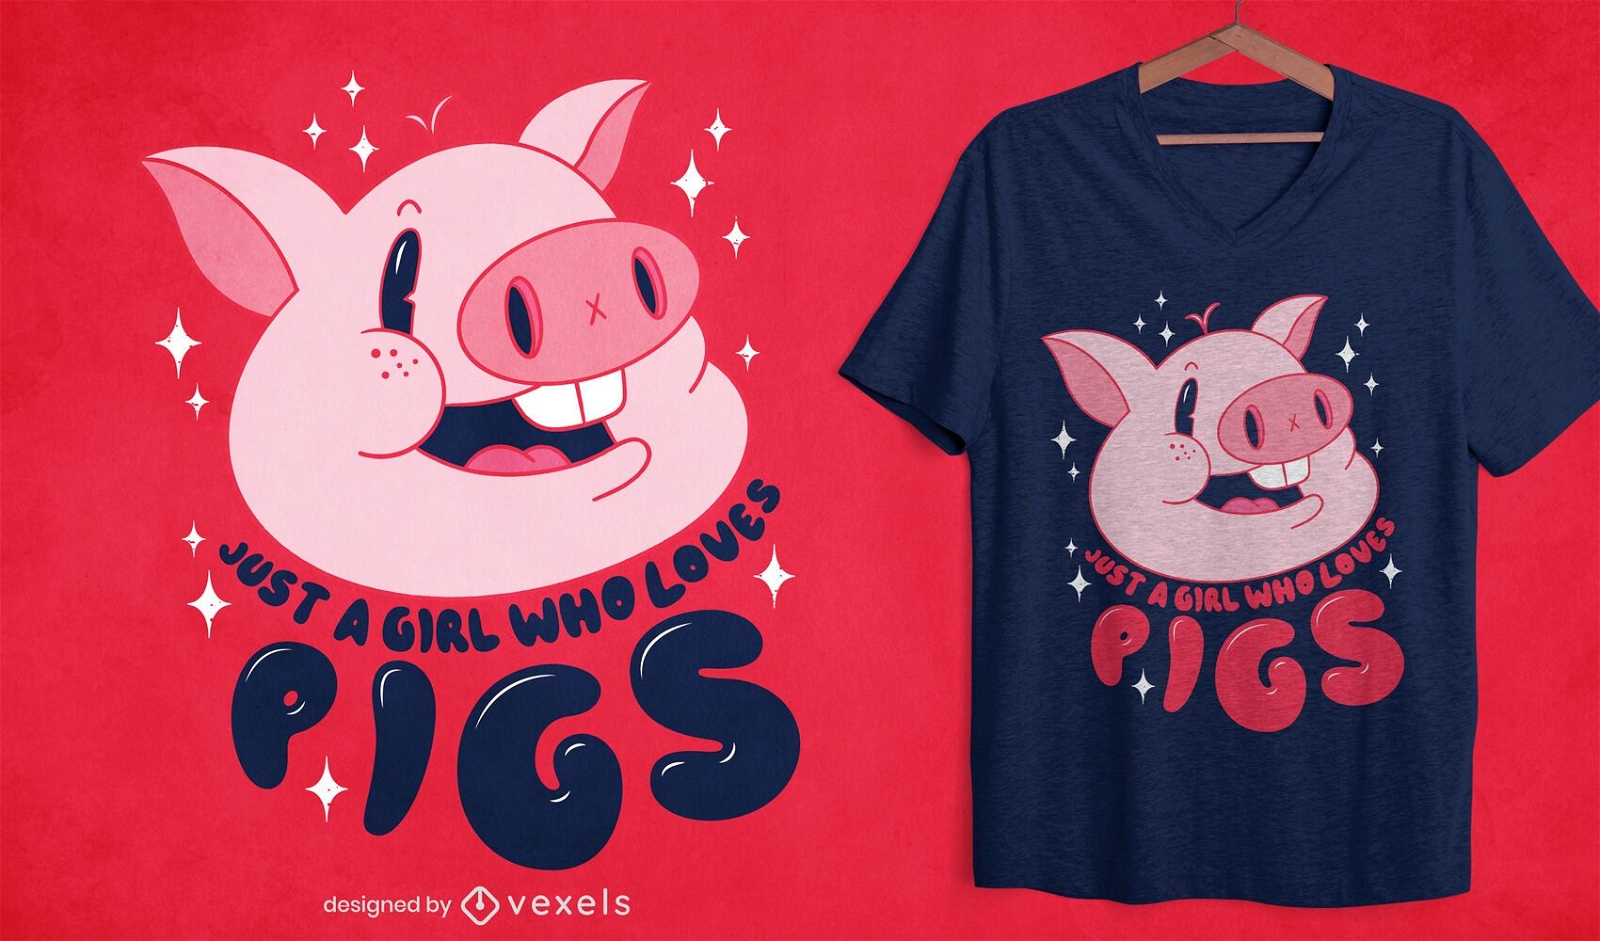 Dise?o de camiseta de ni?a ama los cerdos